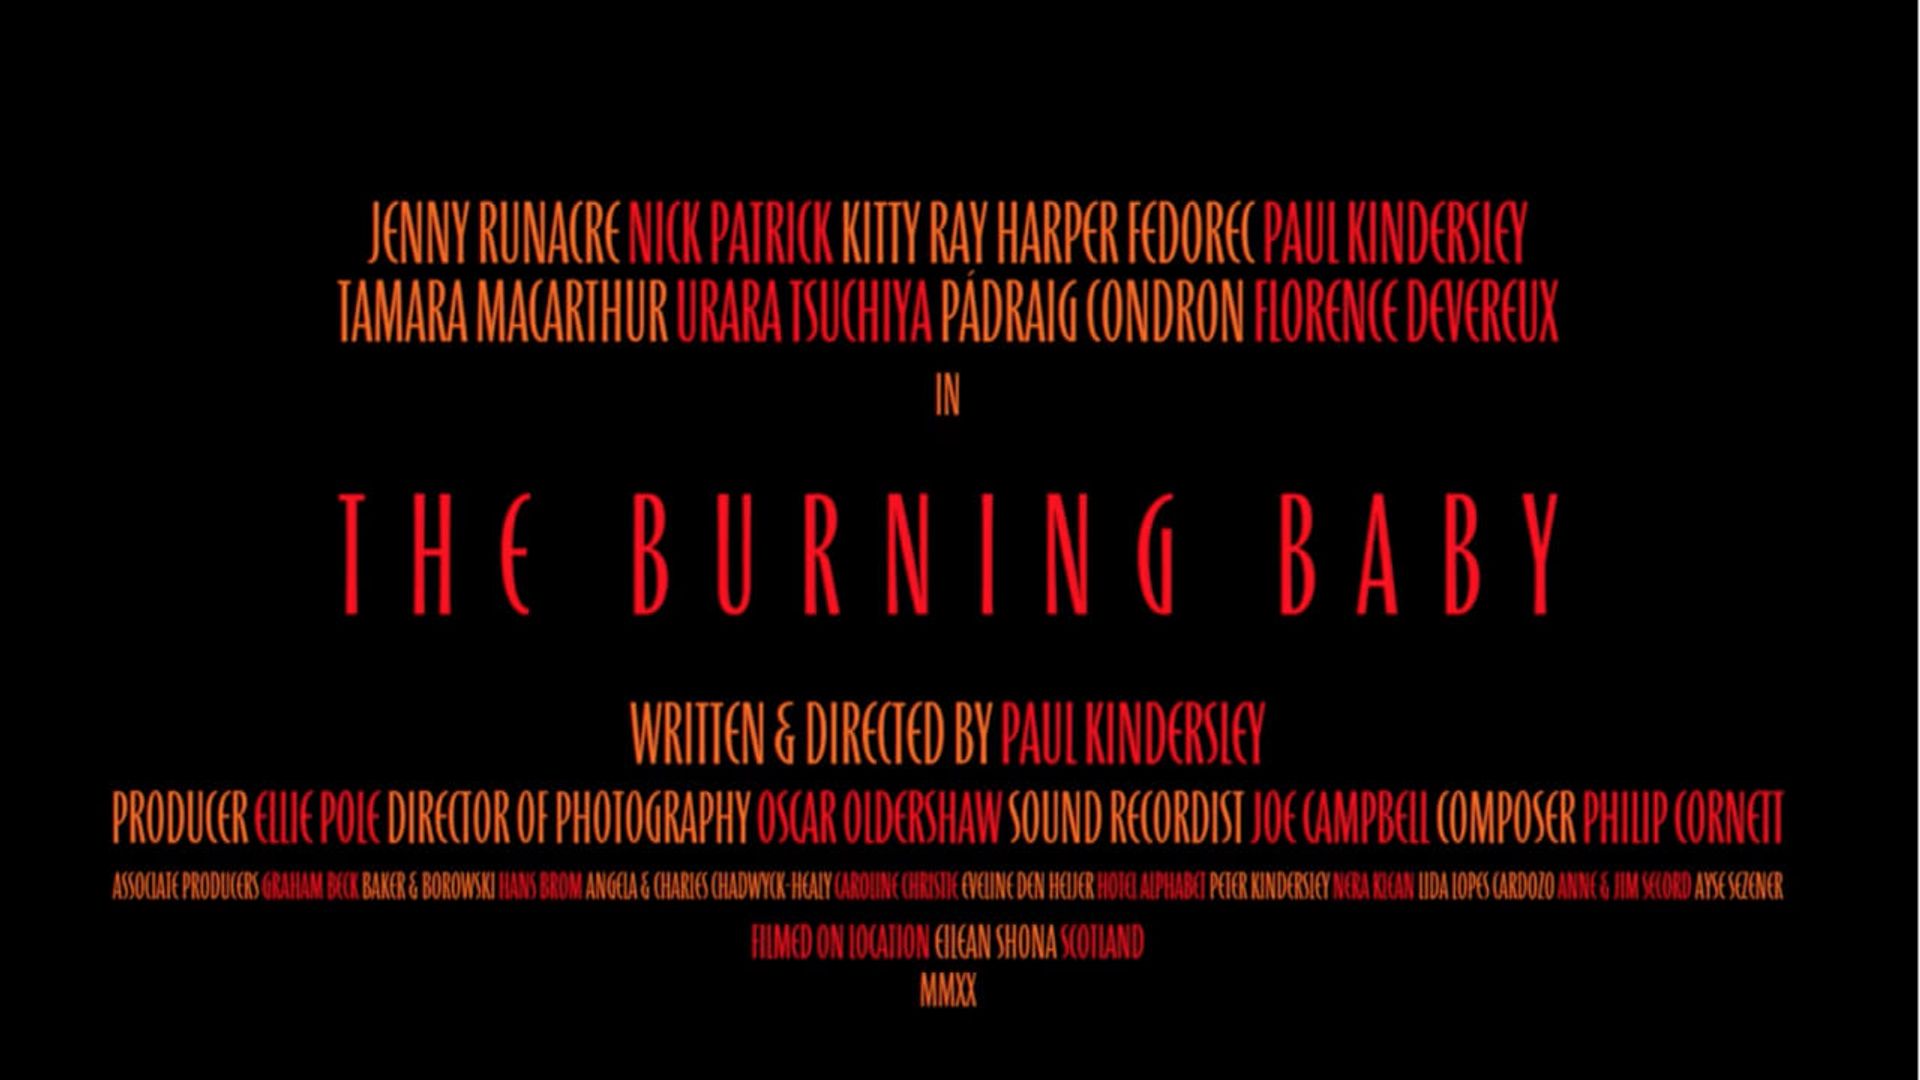 The Burning Baby background